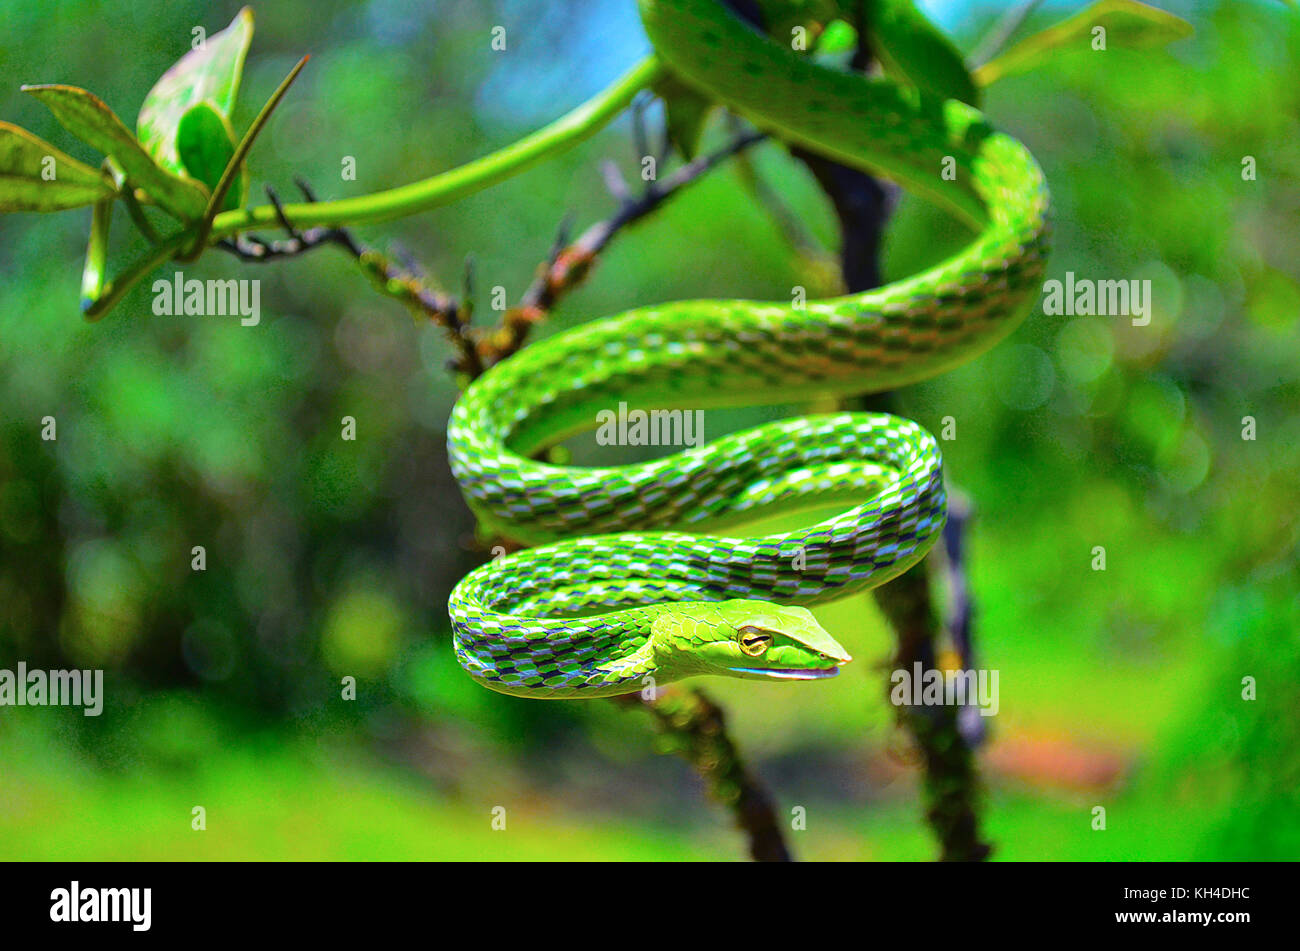 Serpent de vigne verte, ahaetulla nasuta, dudhsagar, Goa, Inde Banque D'Images